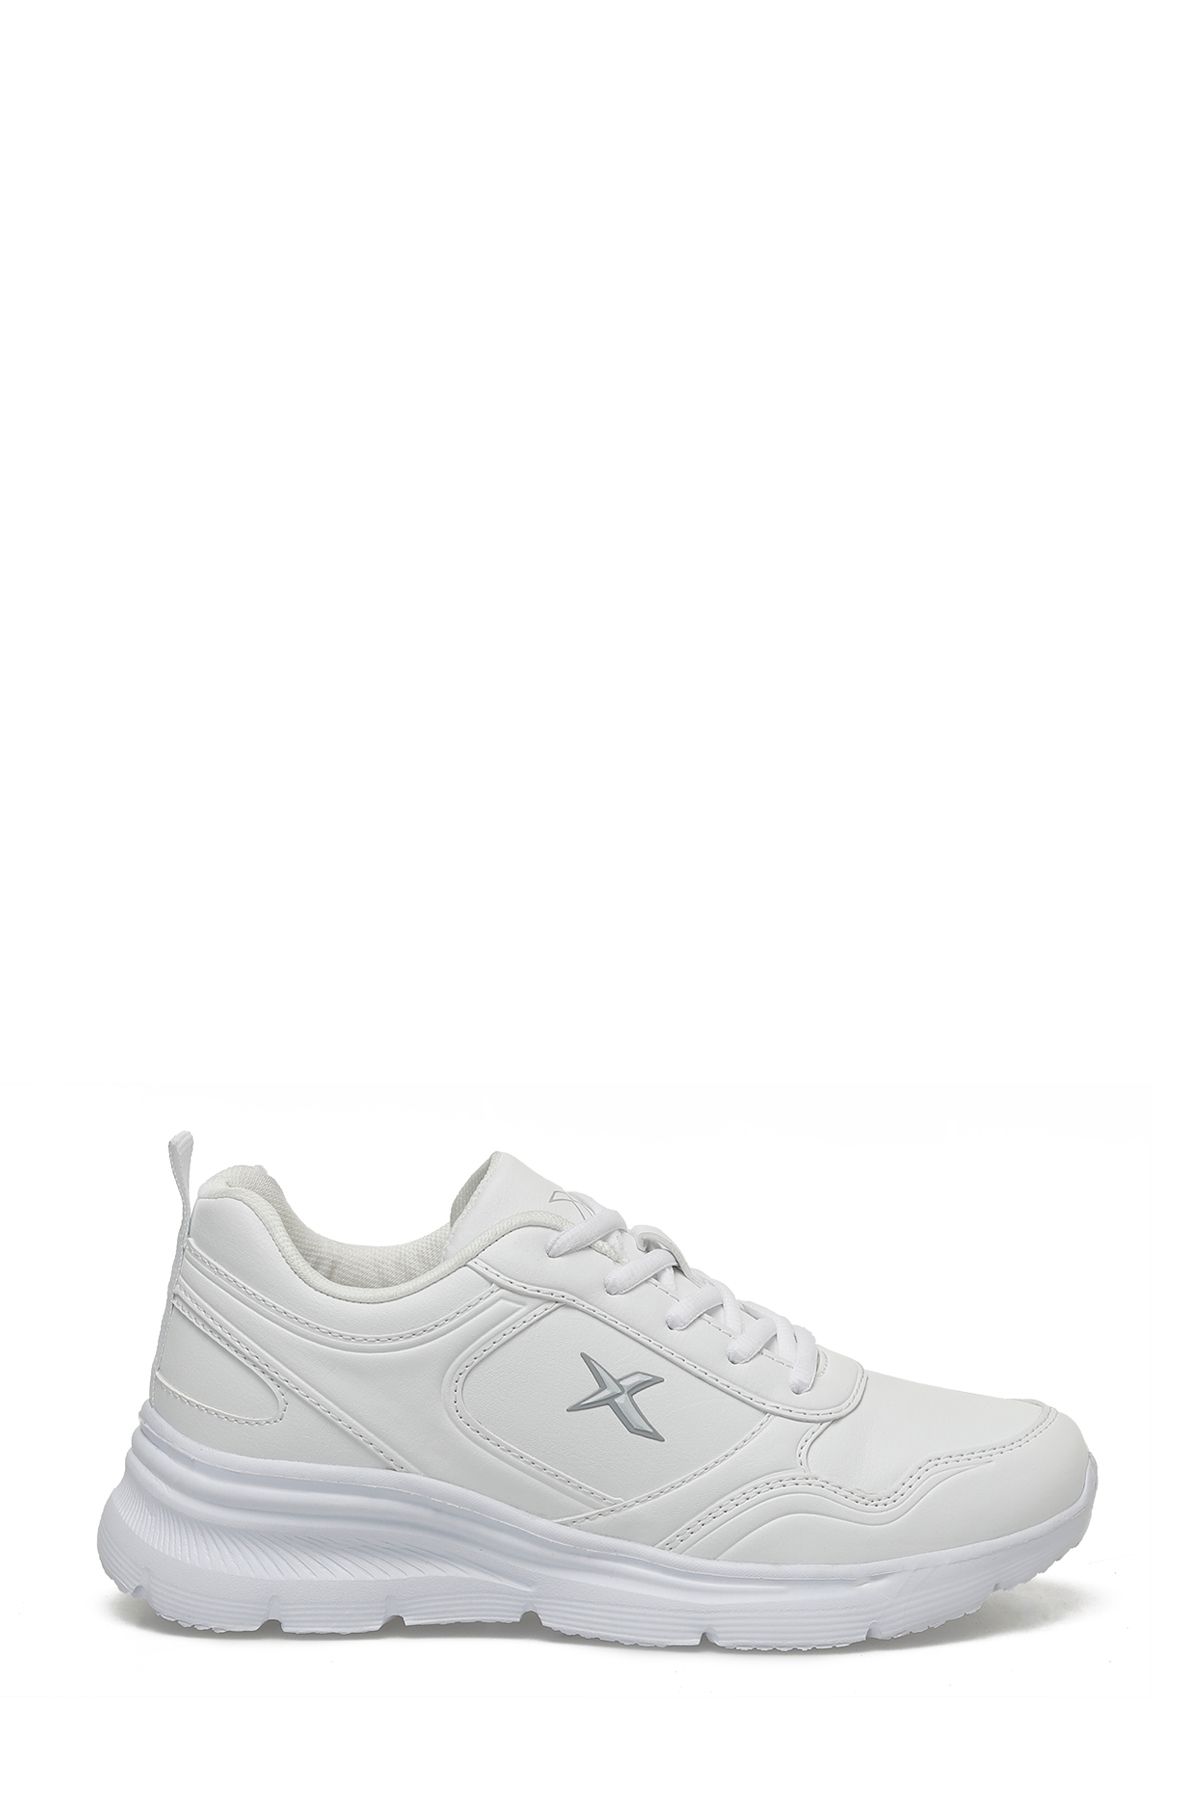 Kinetix SUOMY PU W 4FX Beyaz Kadın Comfort Ayakkabı